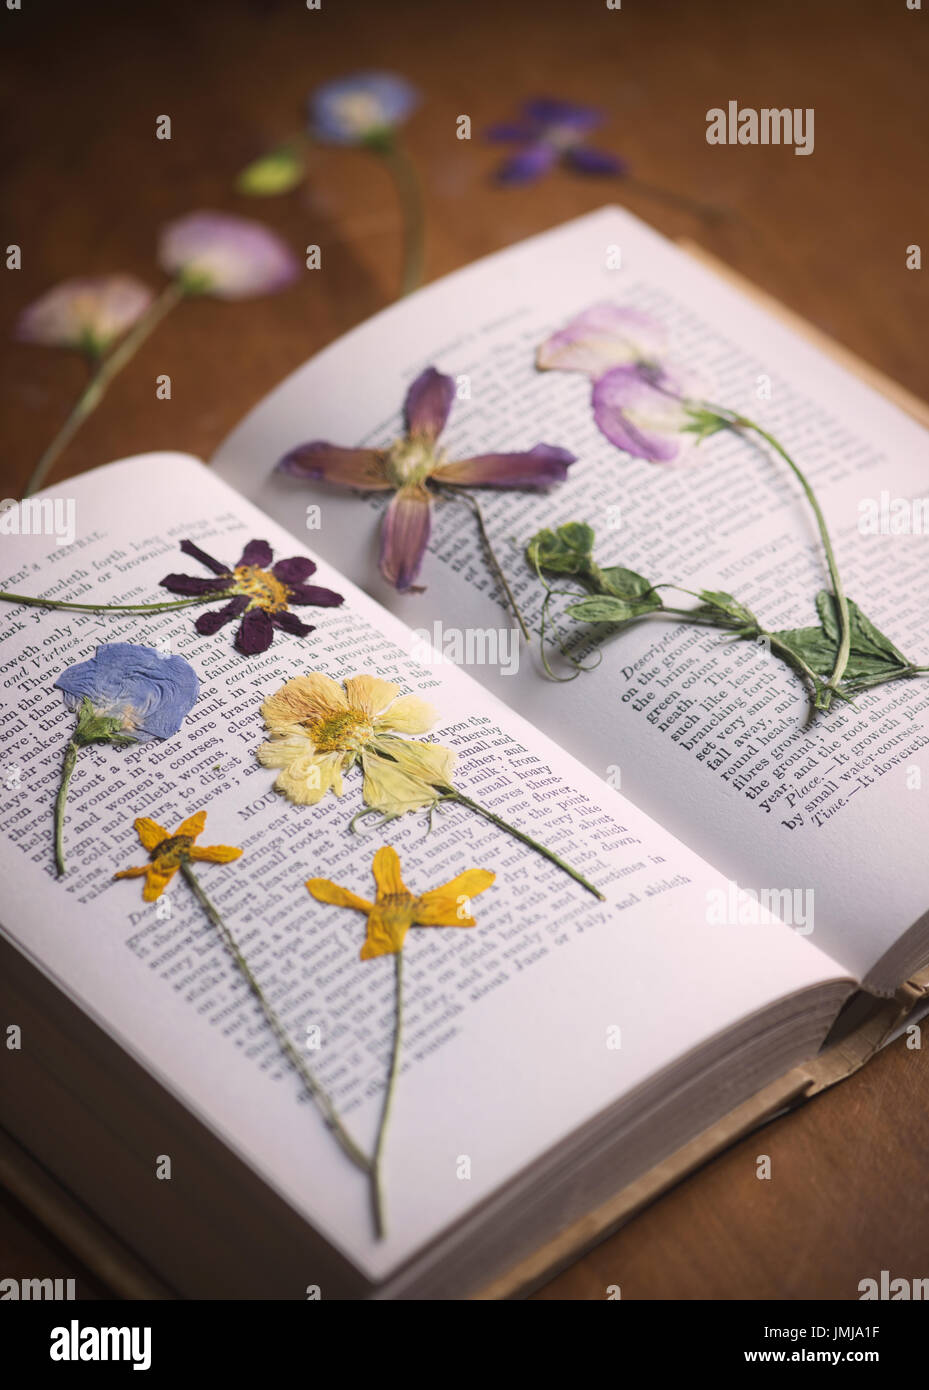 Prensado de flores secas en un libro sobre una mesa de madera. UK Foto de stock